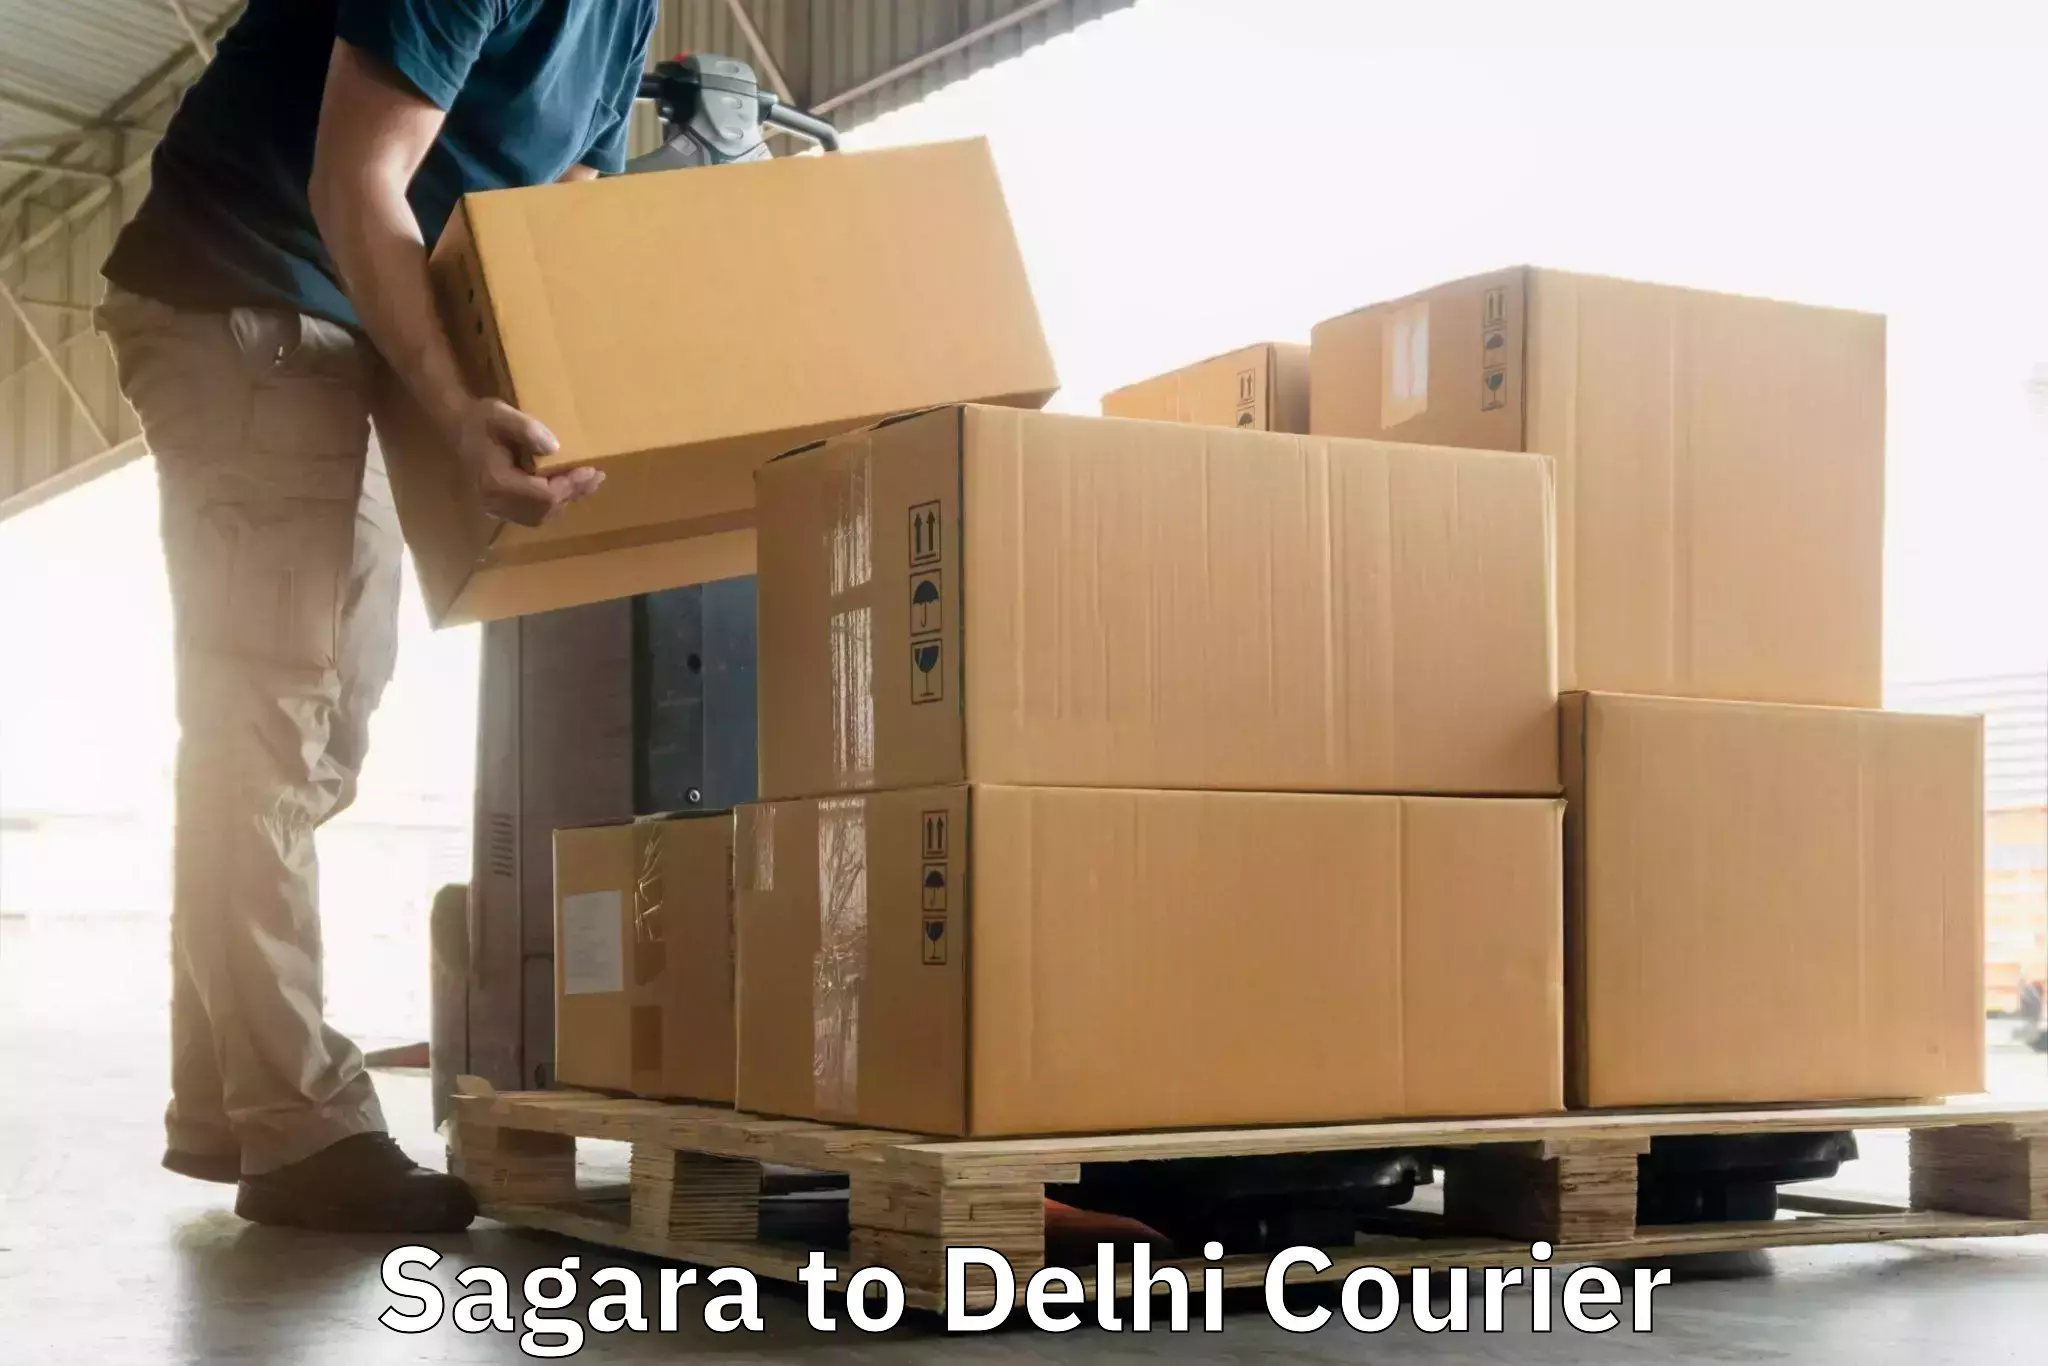 24-hour courier services Sagara to Jawaharlal Nehru University New Delhi